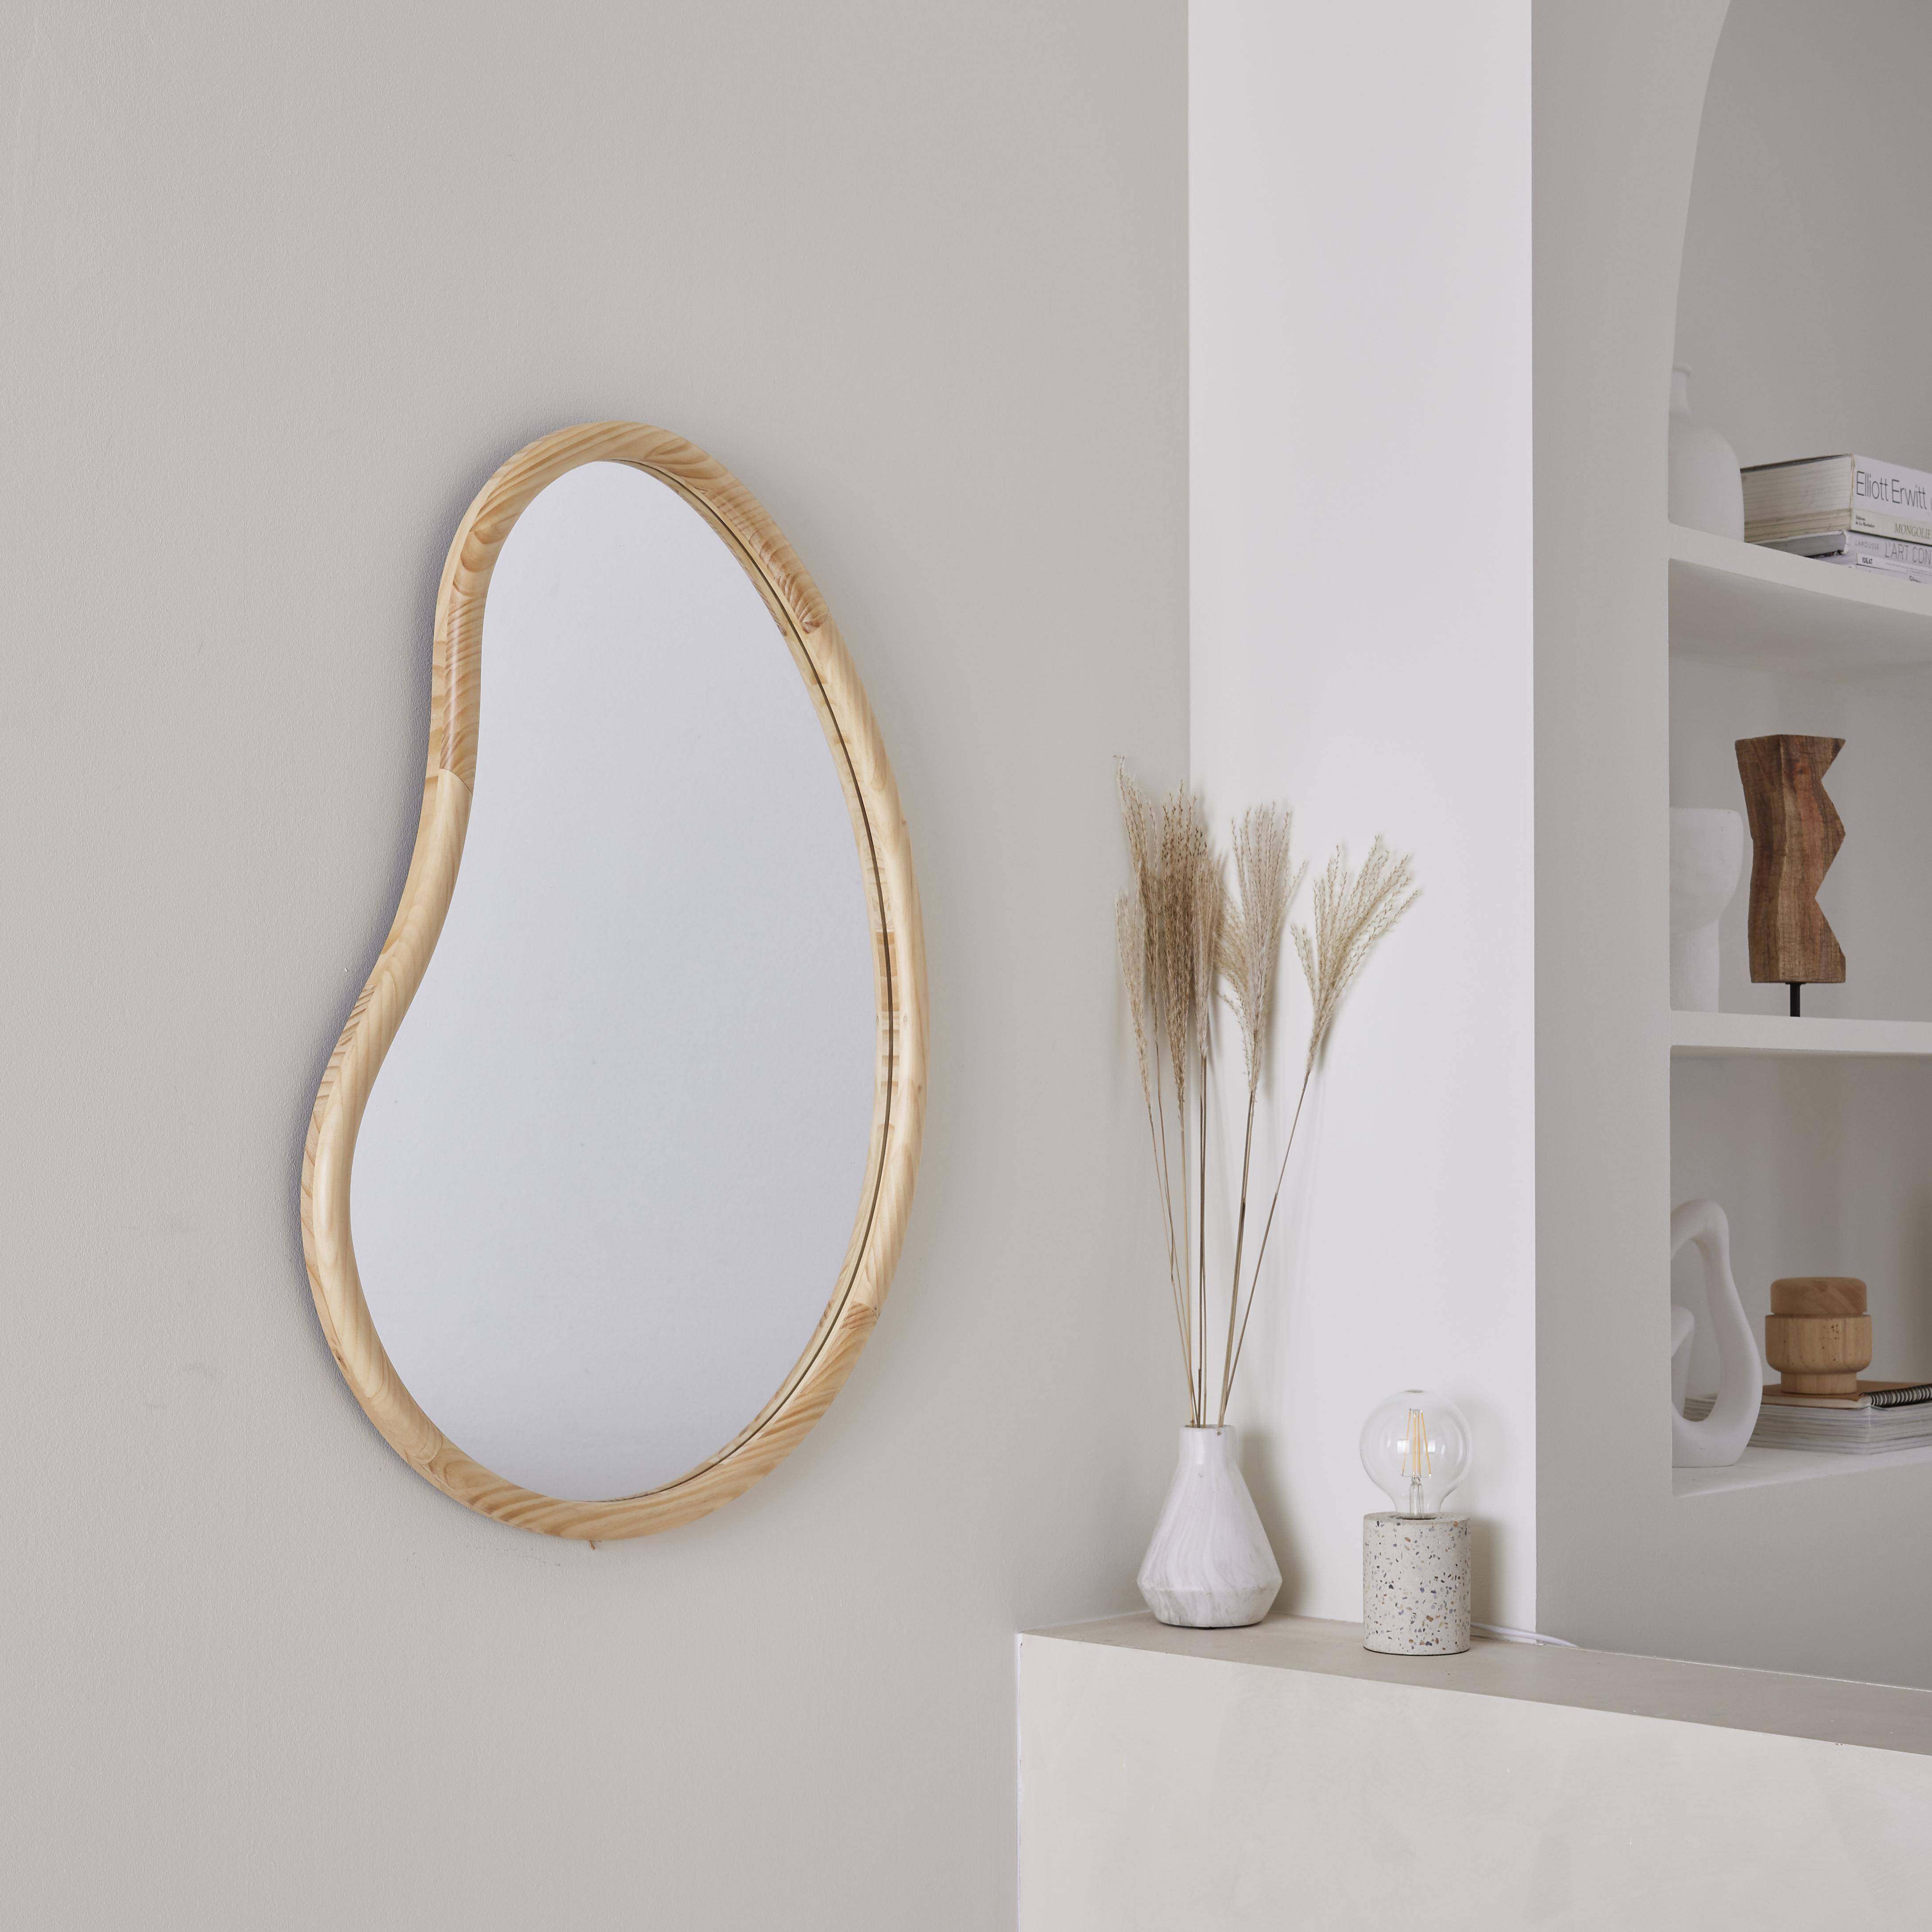 Miroir organique en bois de sapin 85cm épaisseur 3cm coloris naturel idéal entrée, chambre ou salle de bain Photo1